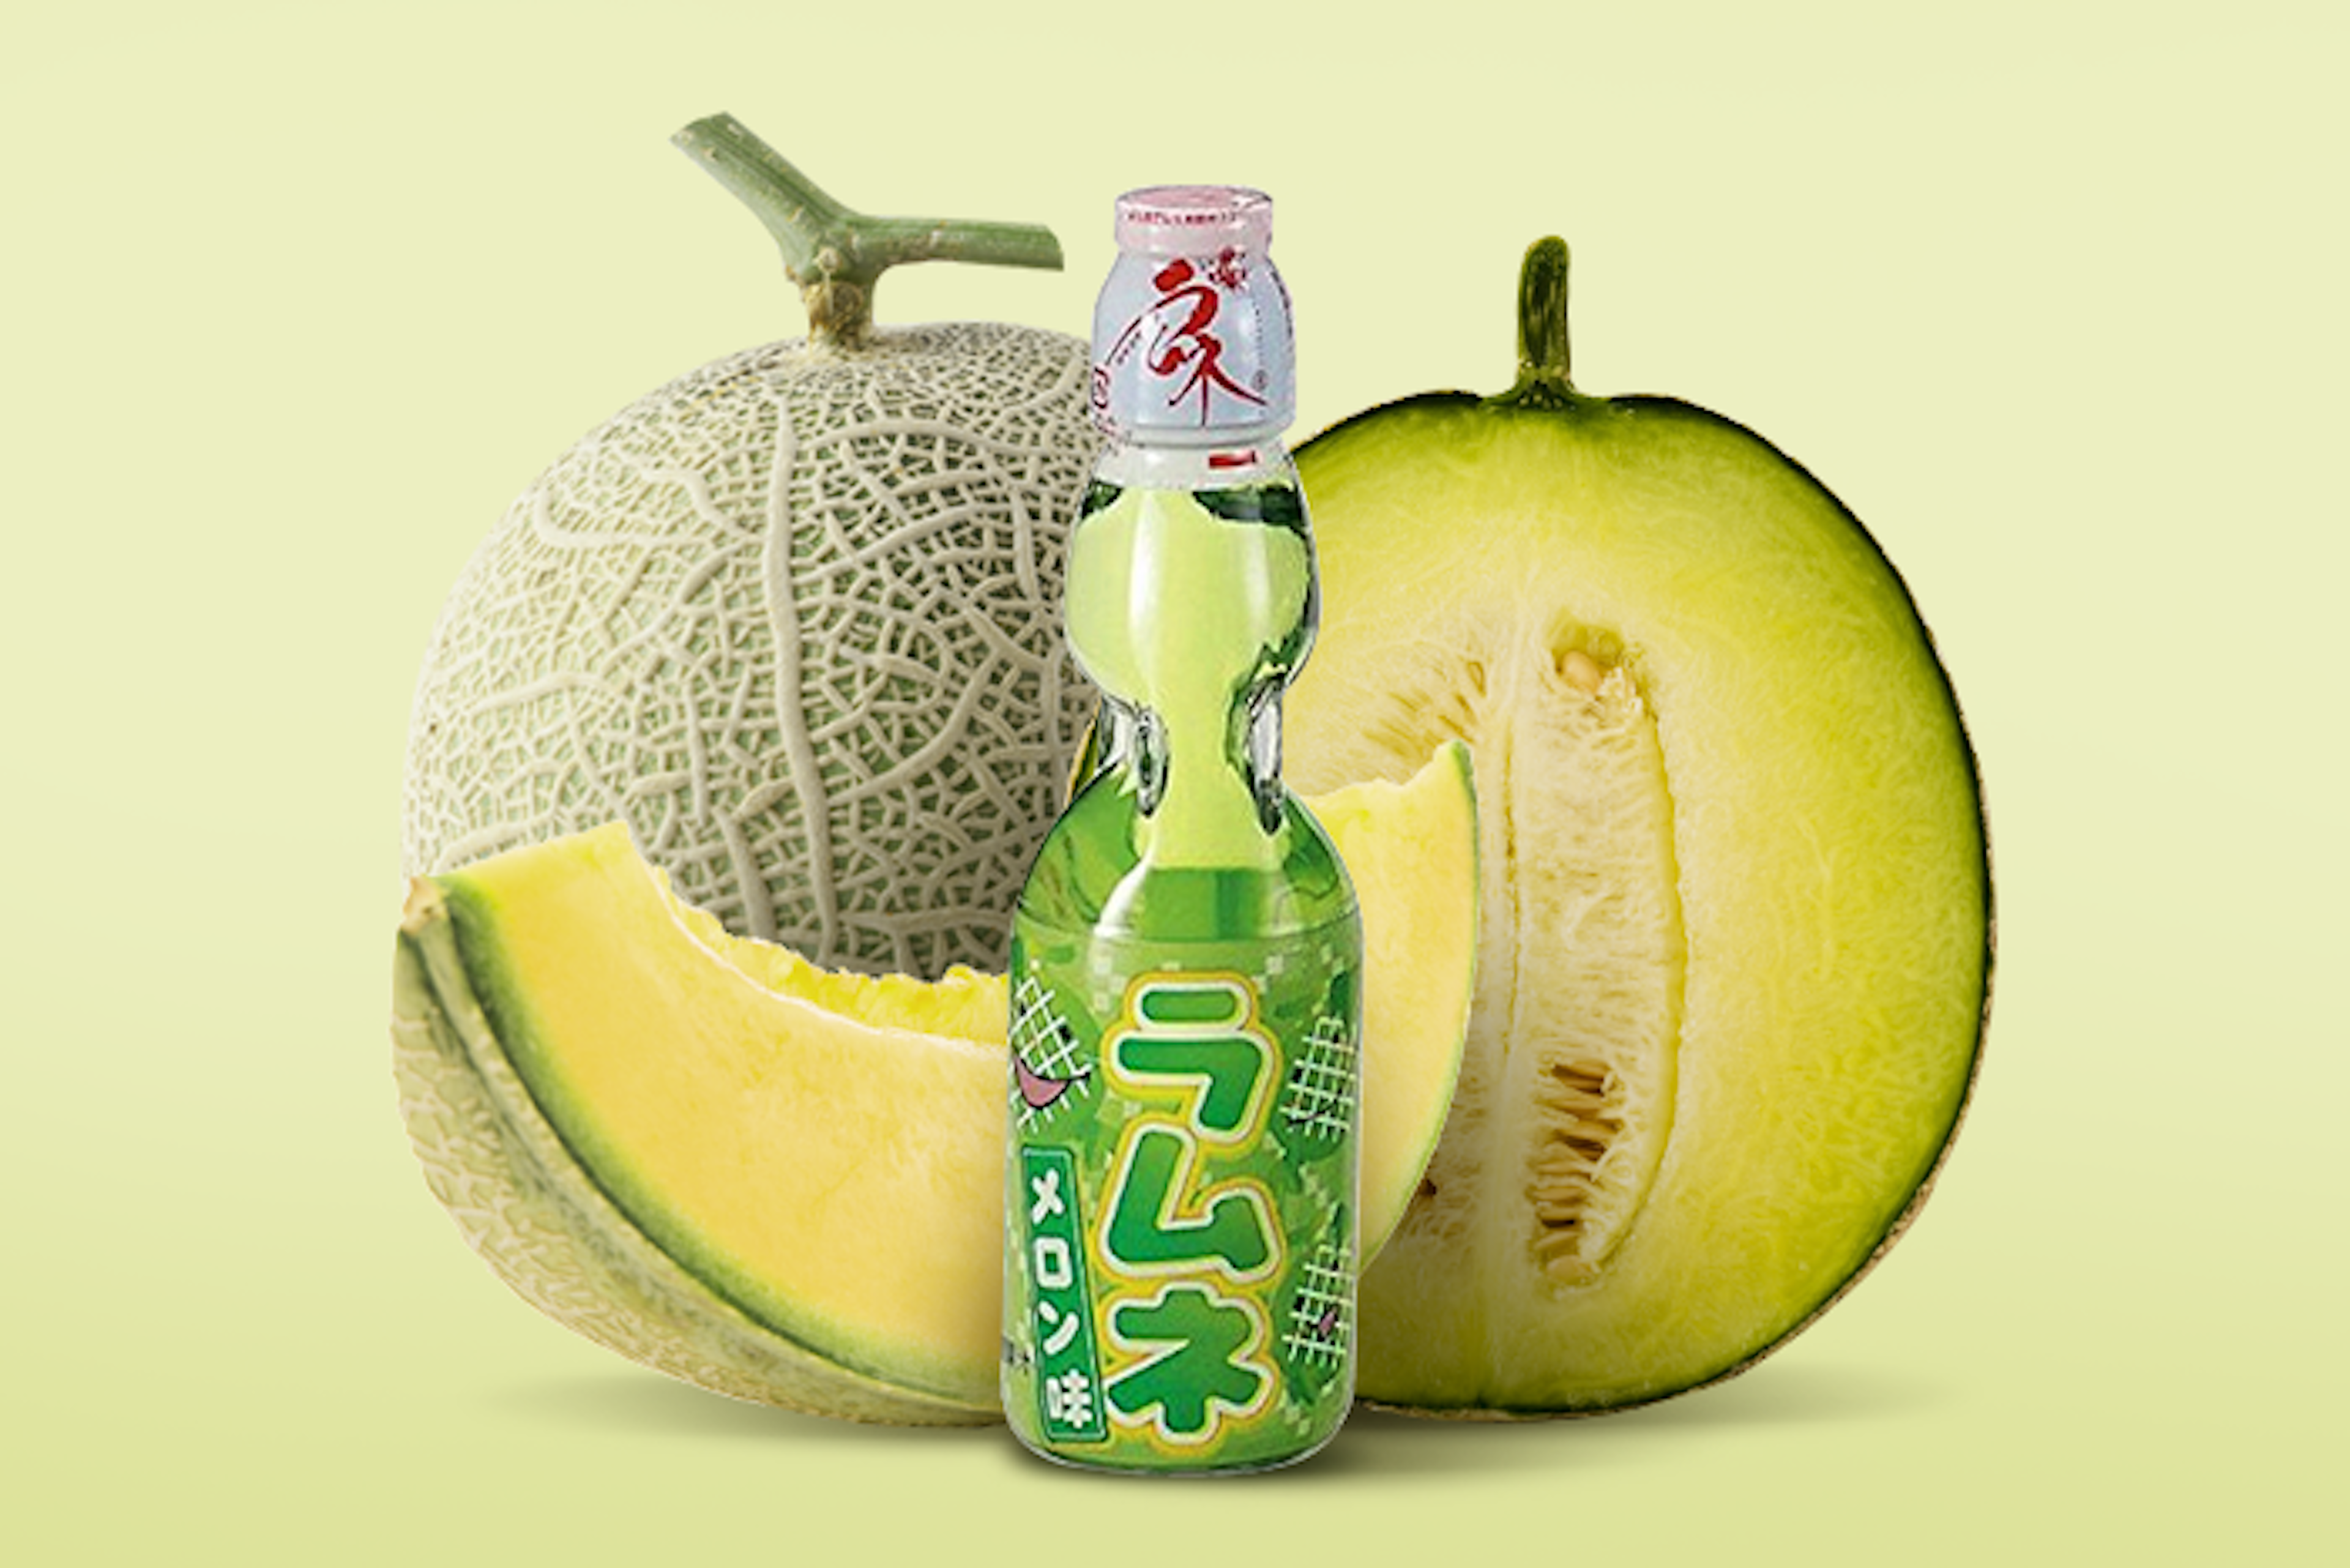 Vorderansicht der HATA Ramune Melone 200ml Flasche: Zeigt die charakteristische Glasflasche mit dem traditionellen Glaskugel-Verschluss